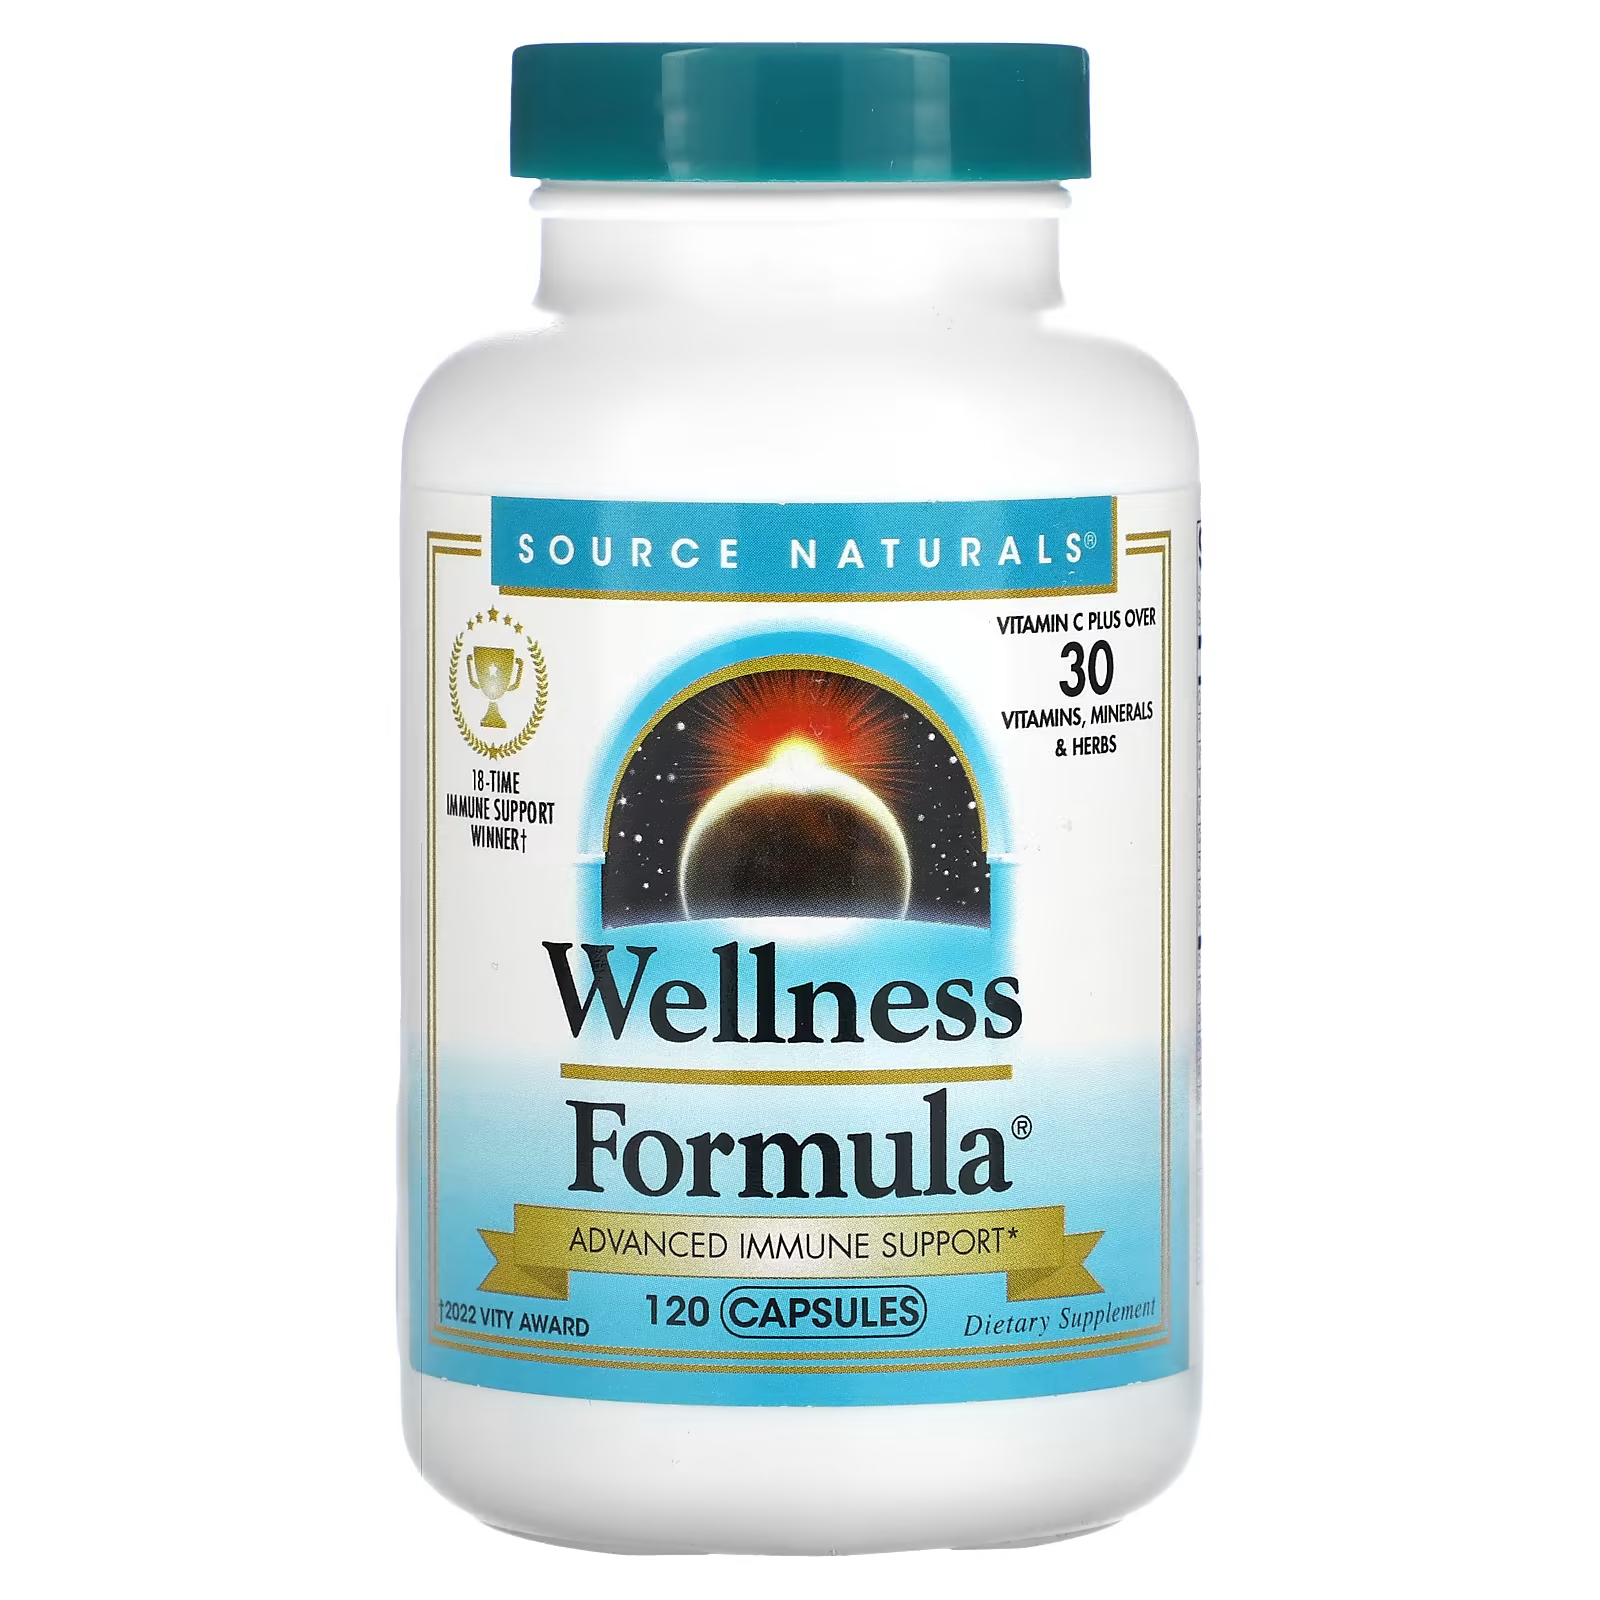 Пищевая добавка Source Naturals Wellness Formula расширенная поддержка иммунитета, 120 капсул цена и фото